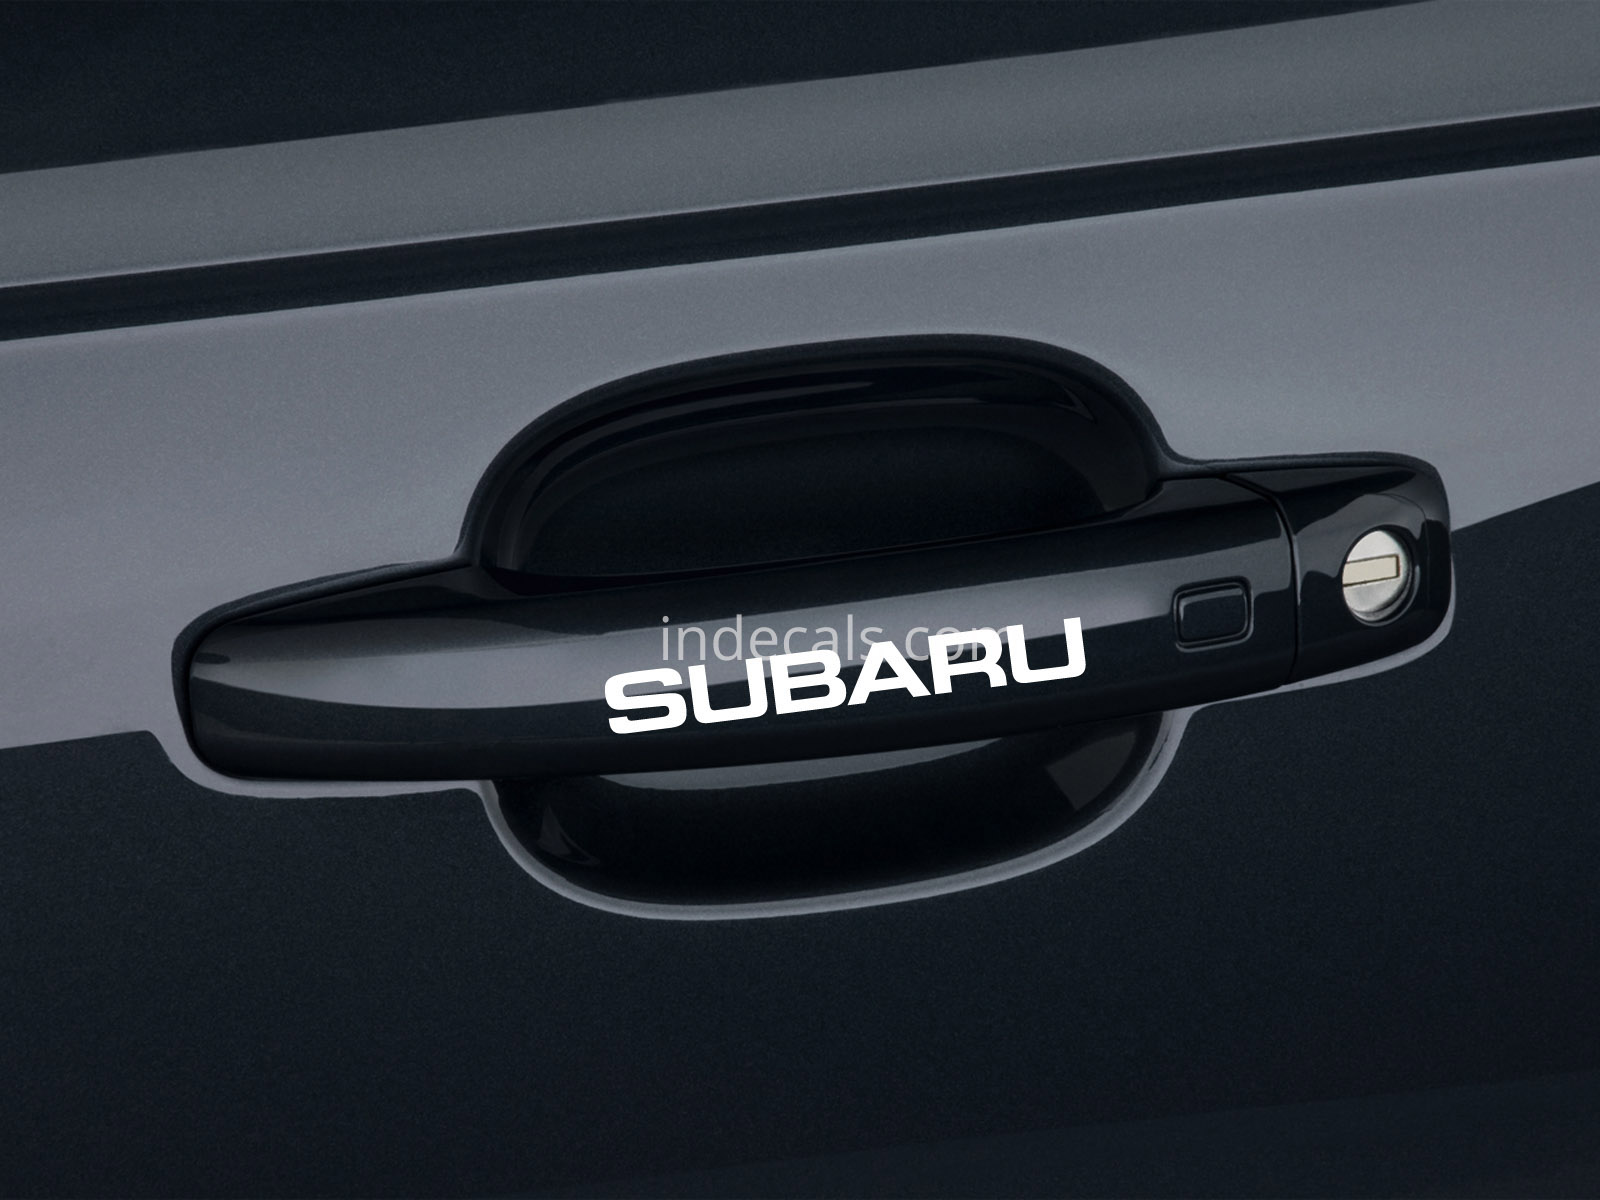 6 x Subaru Stickers for Door Handles - White